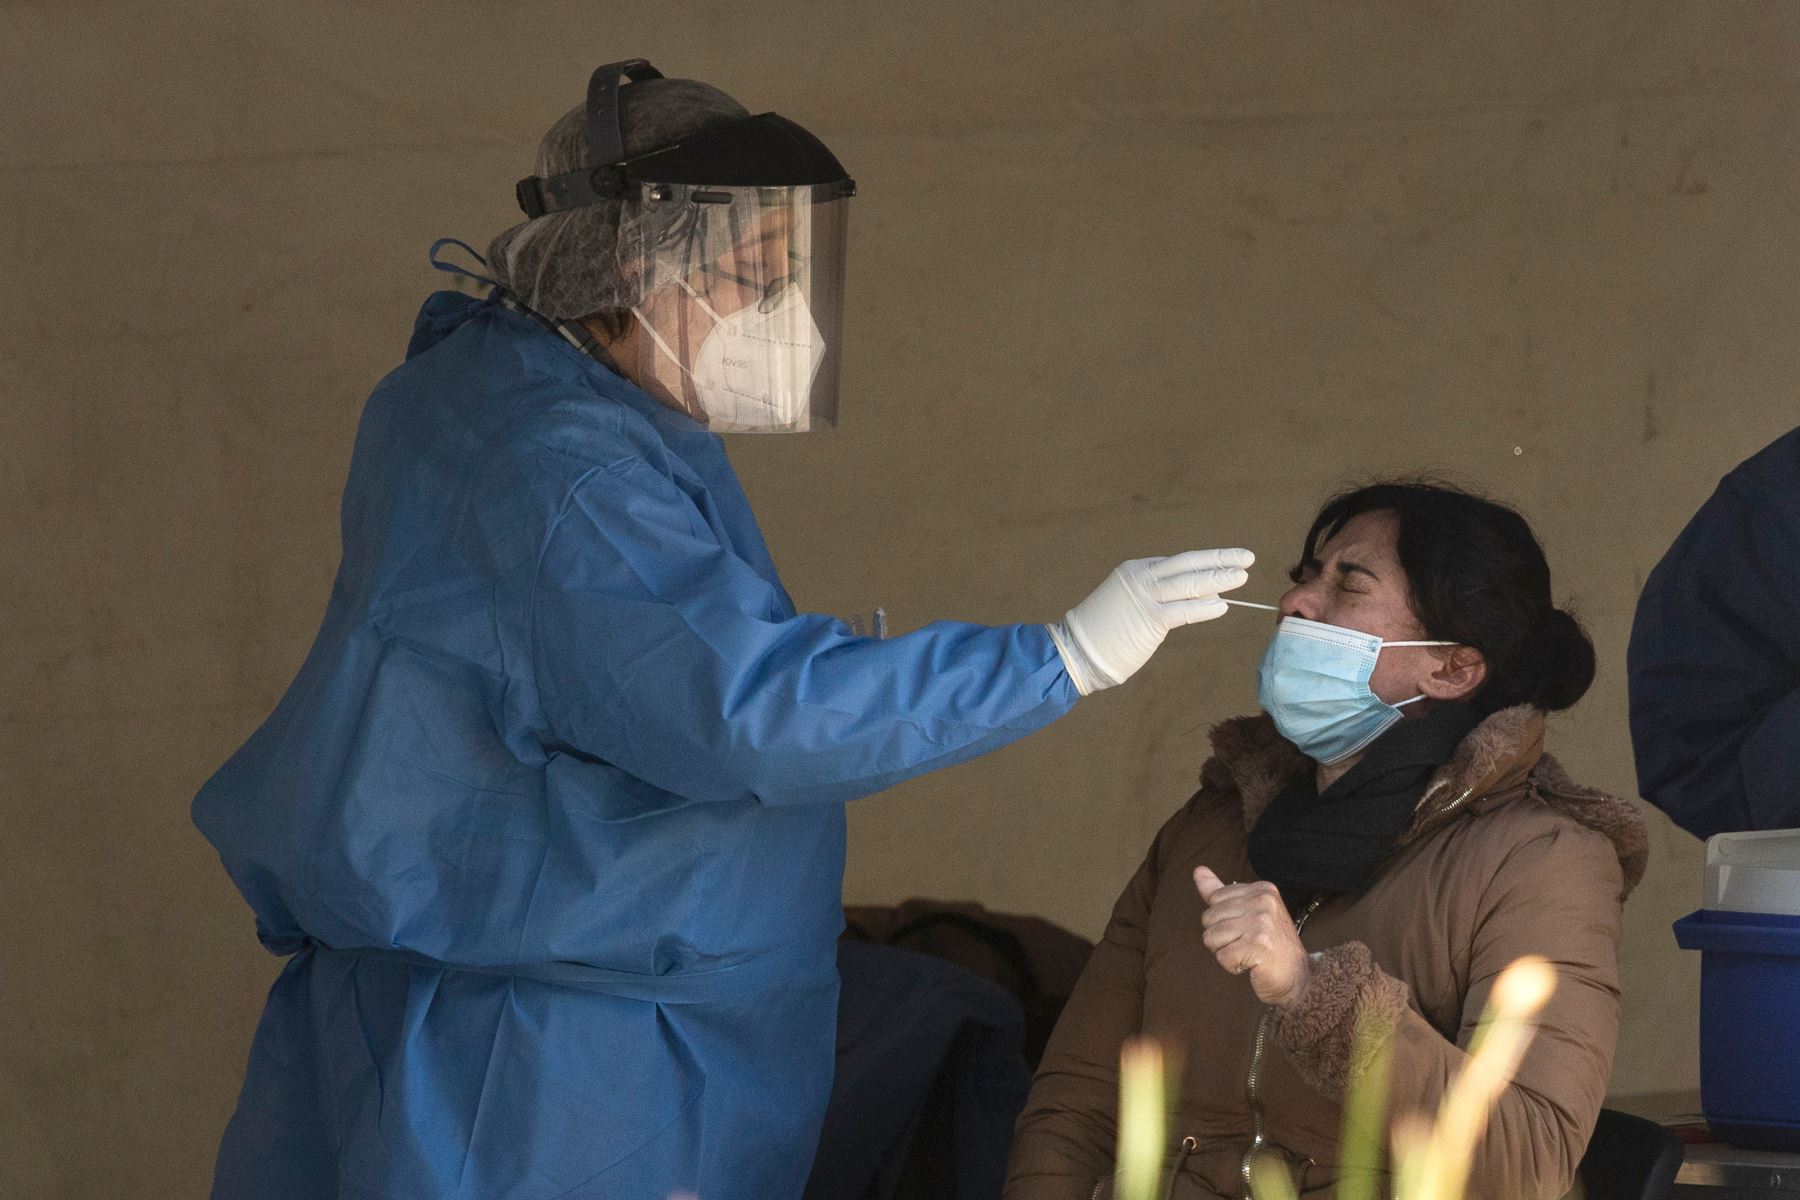 México suma 44,187 nuevos casos de covid-19, la cifra más alta en pandemia